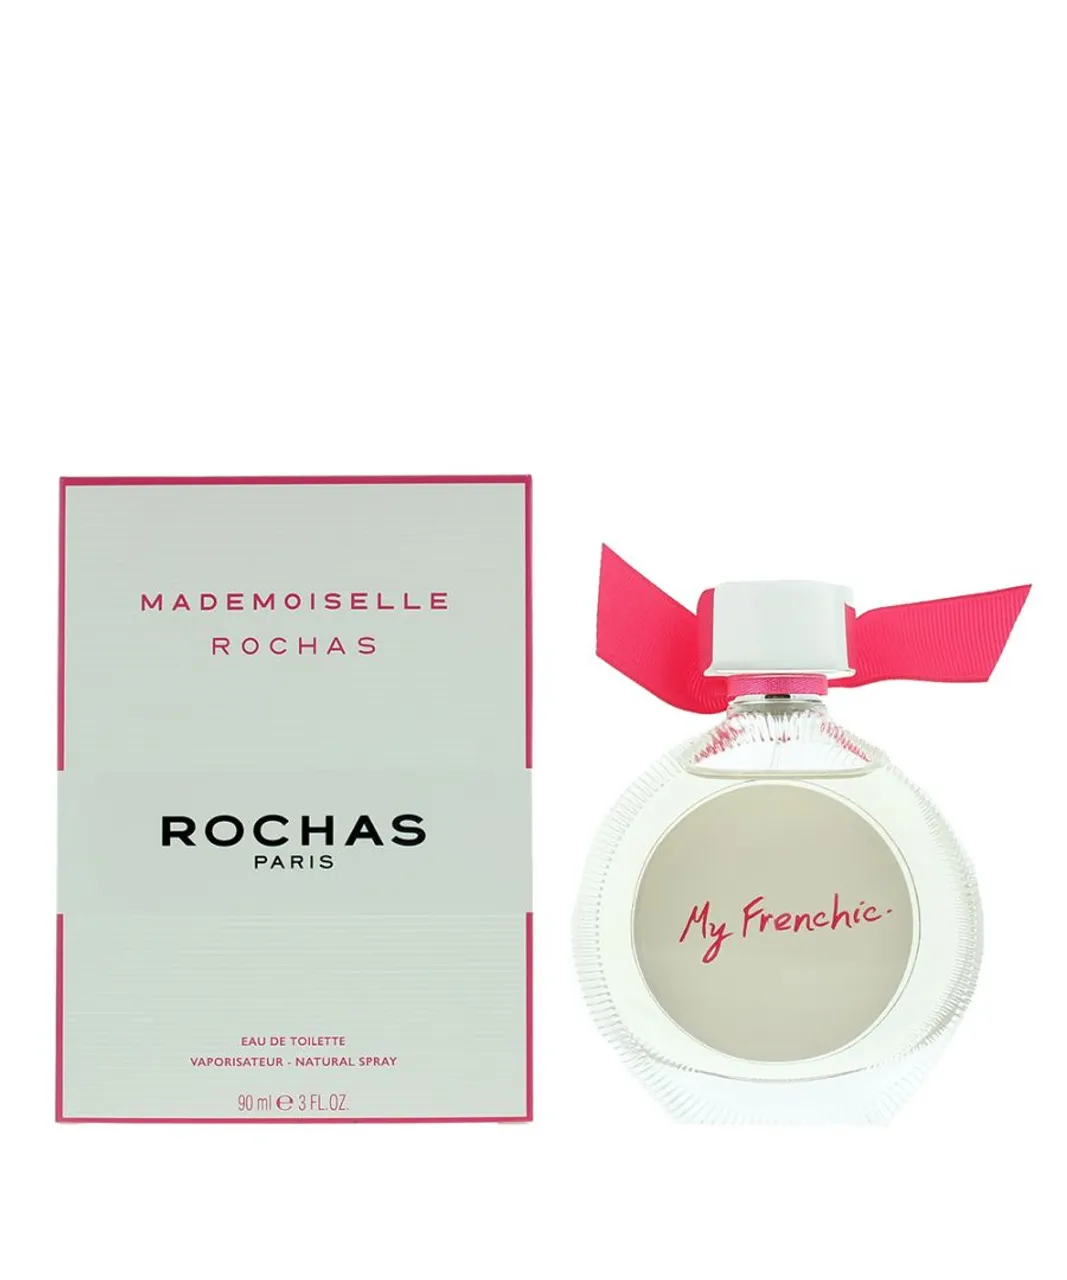 Rochas Womens Mademoiselle Eau de Toilette 90ml Spray - Apple - One Size